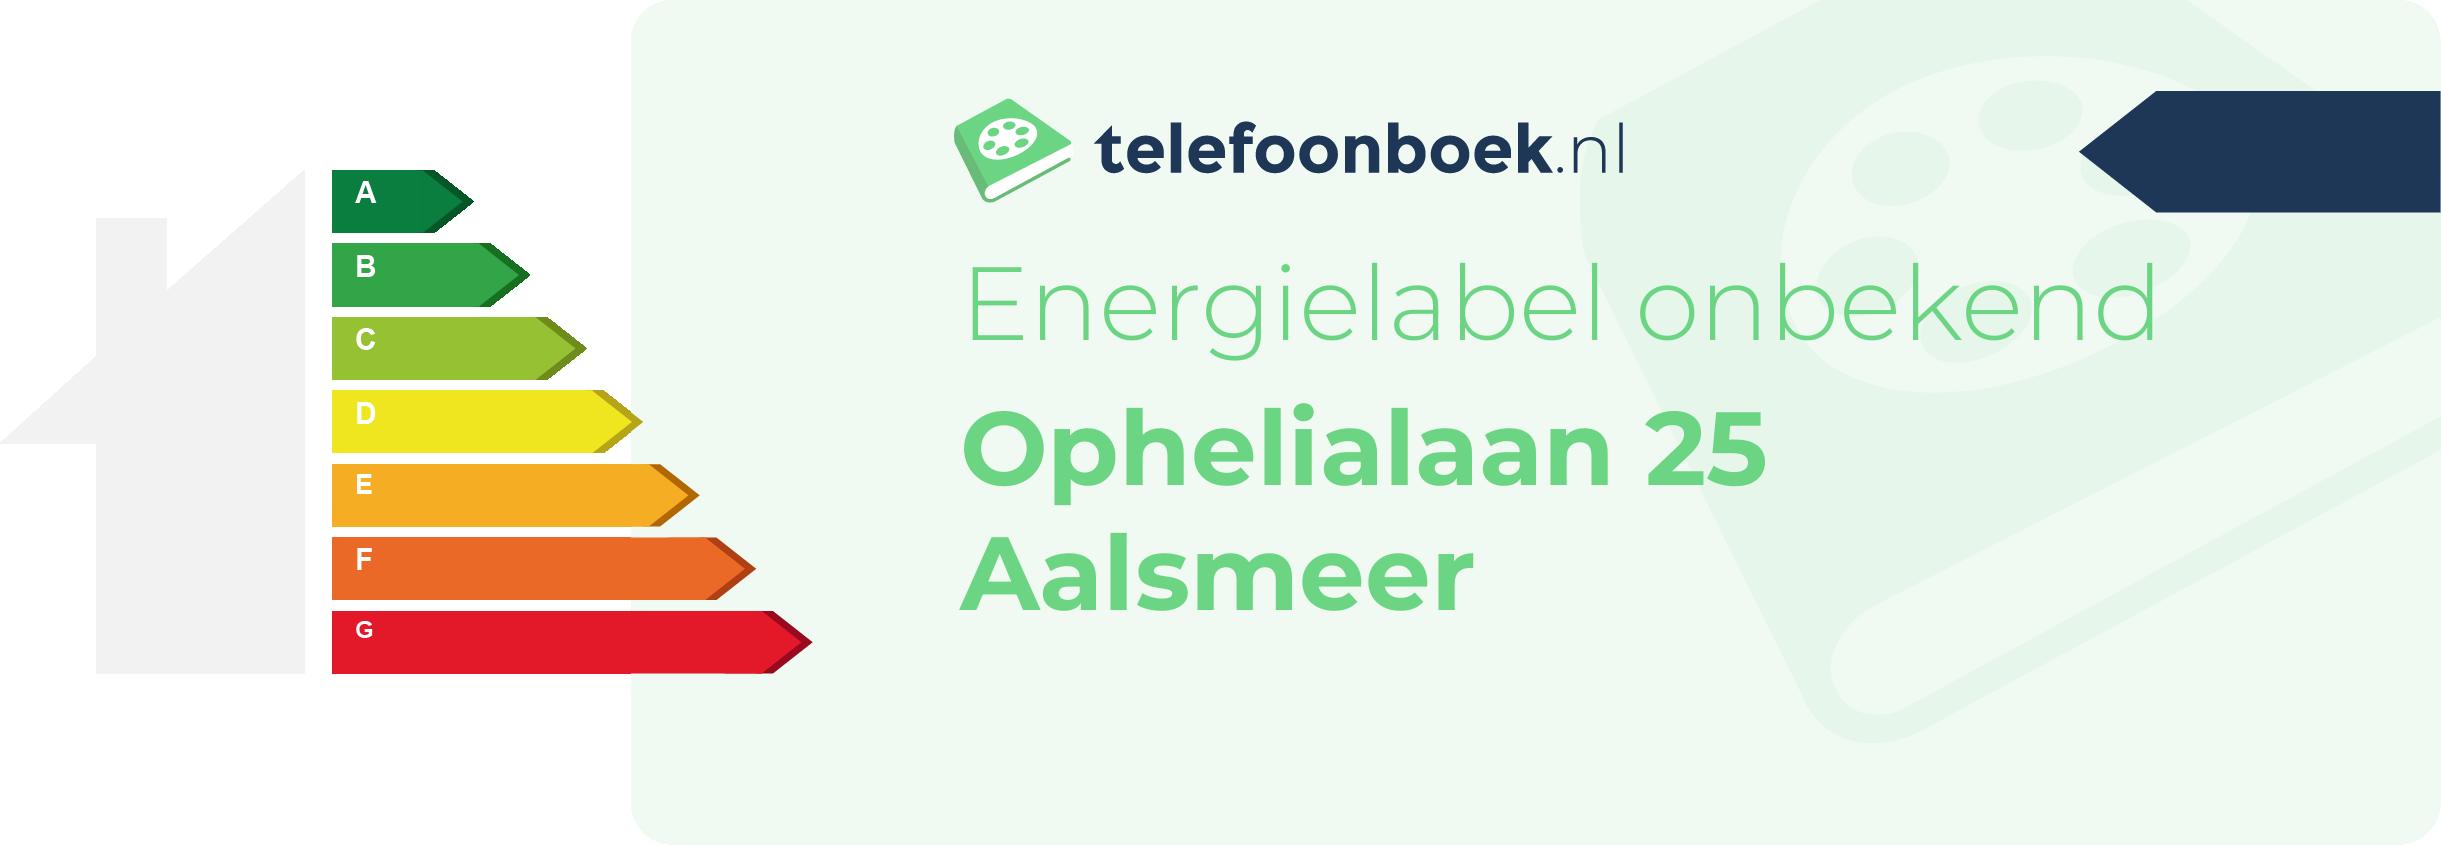 Energielabel Ophelialaan 25 Aalsmeer